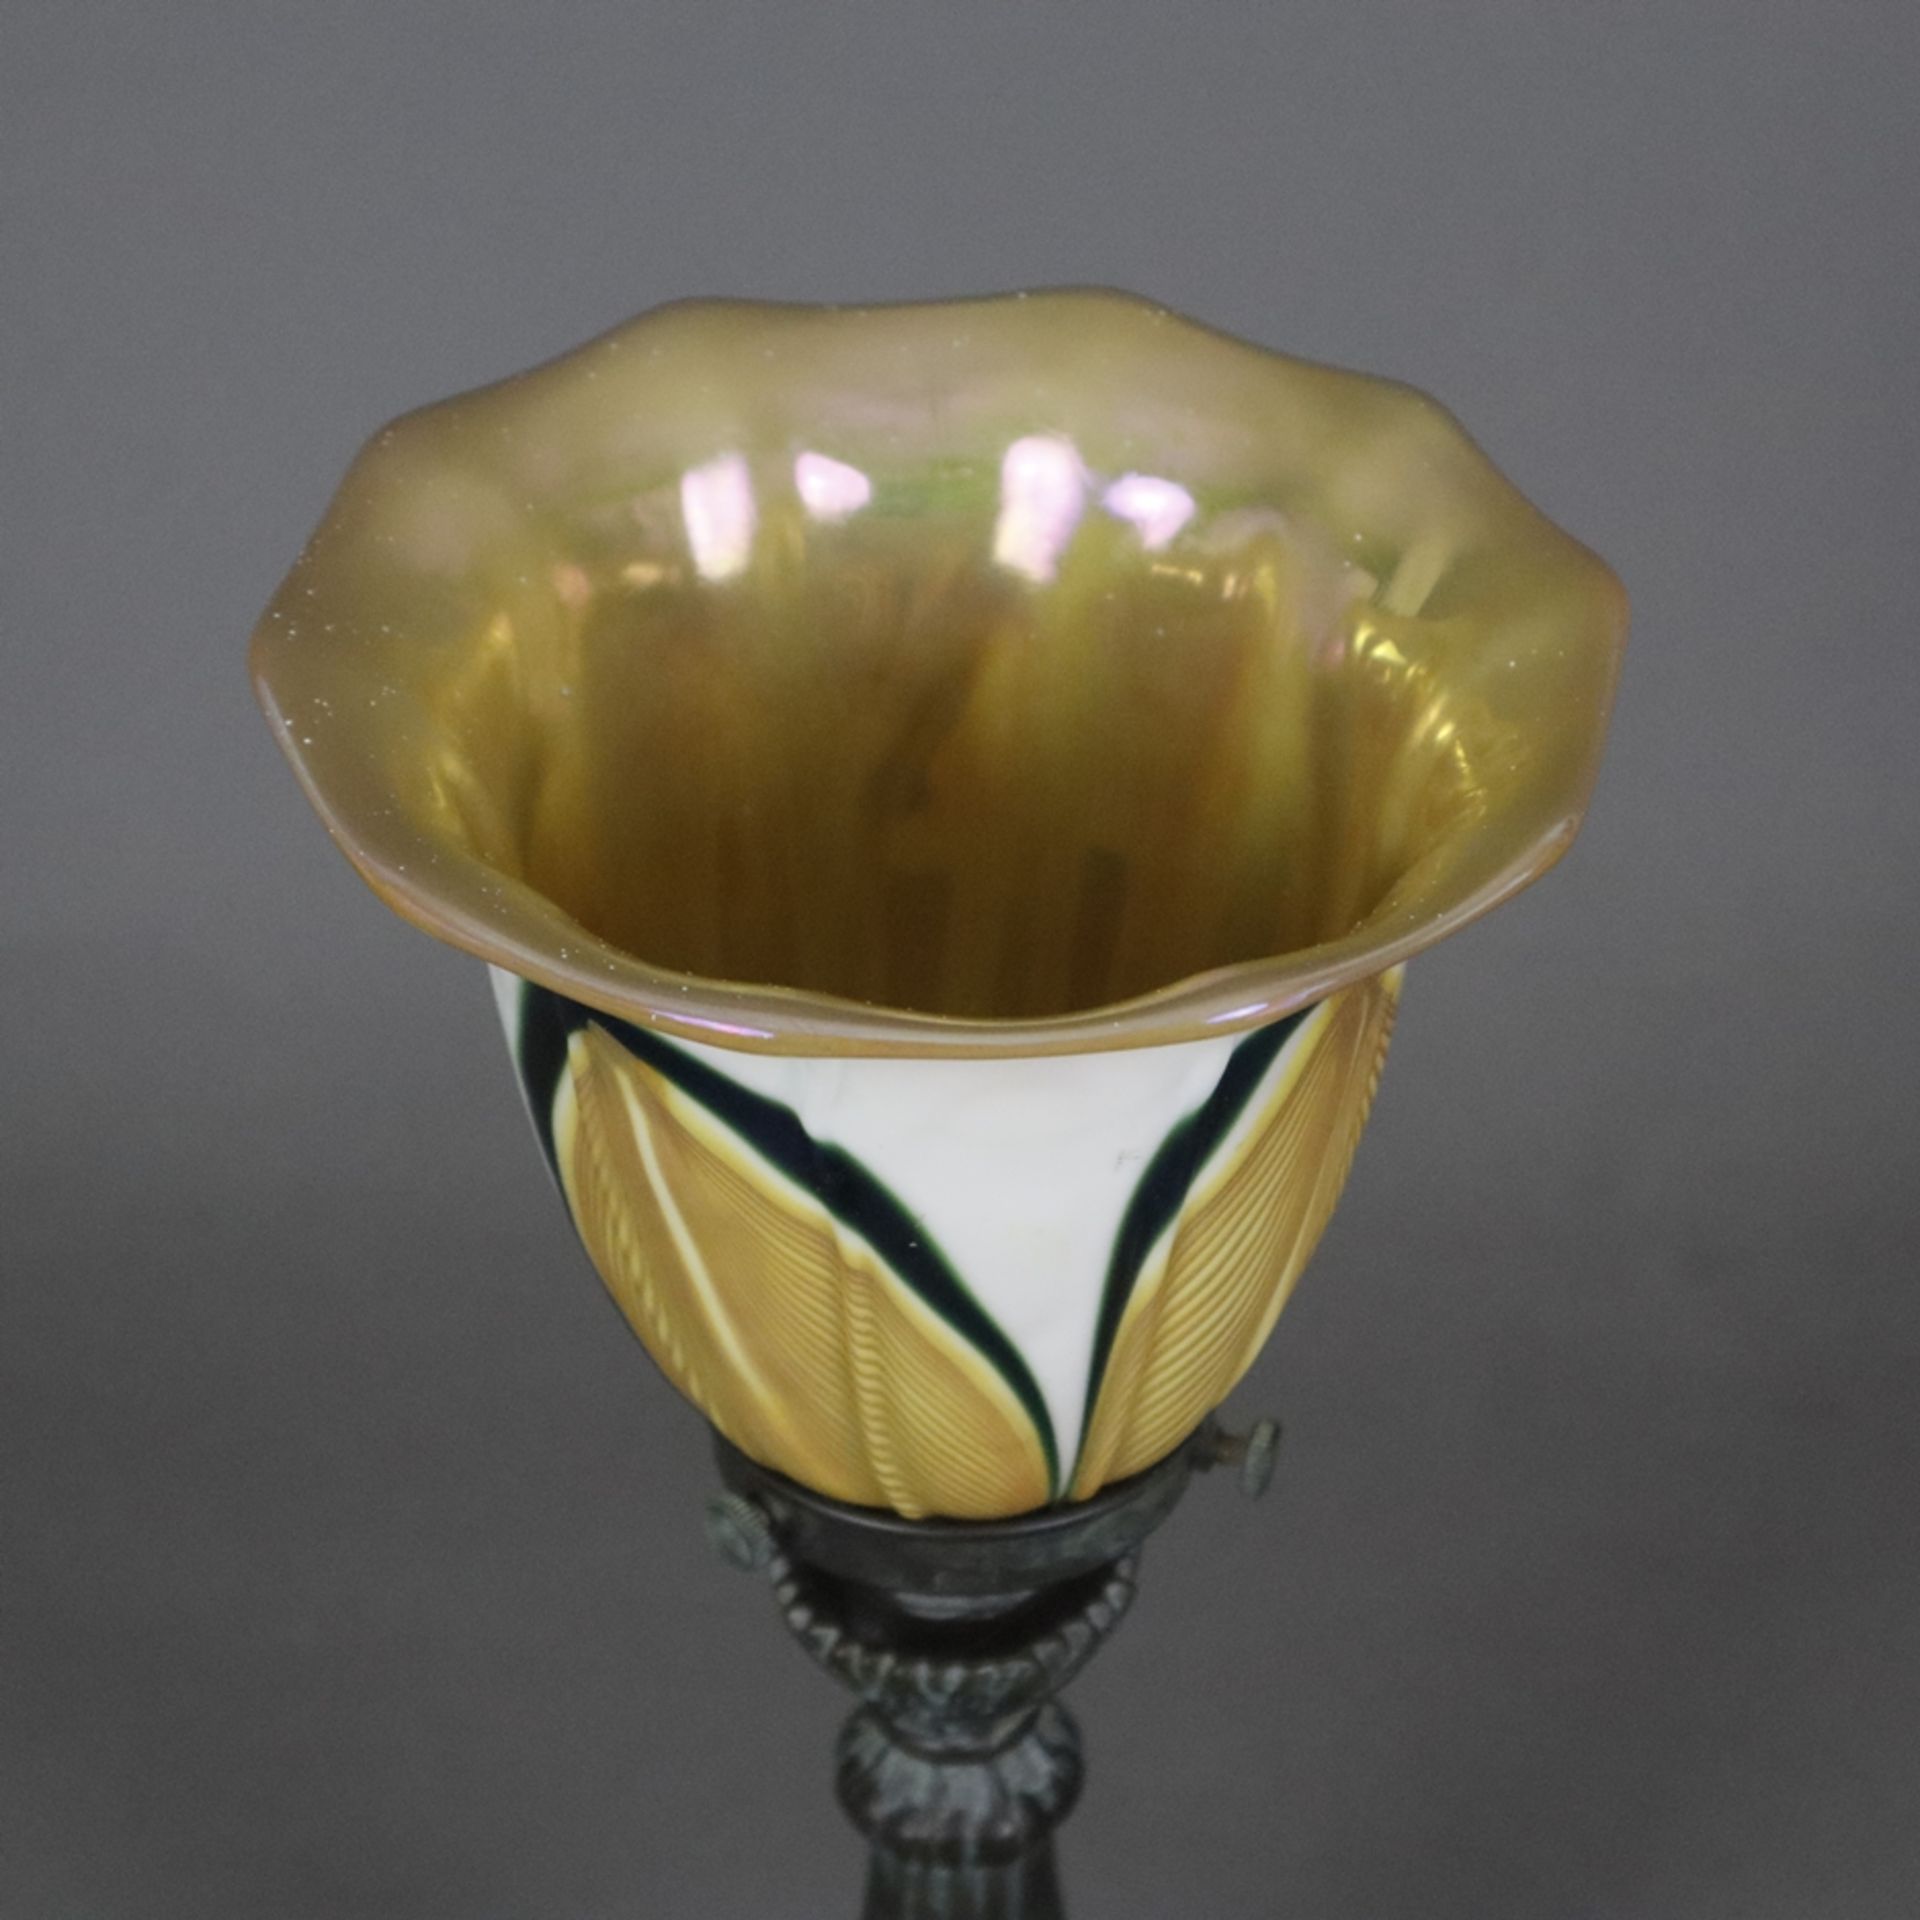 Jugendstil Tischlampe - um 1900/10, floral reliefierter Metallfuß, bronziert, glockenförmiger Glass - Bild 2 aus 7